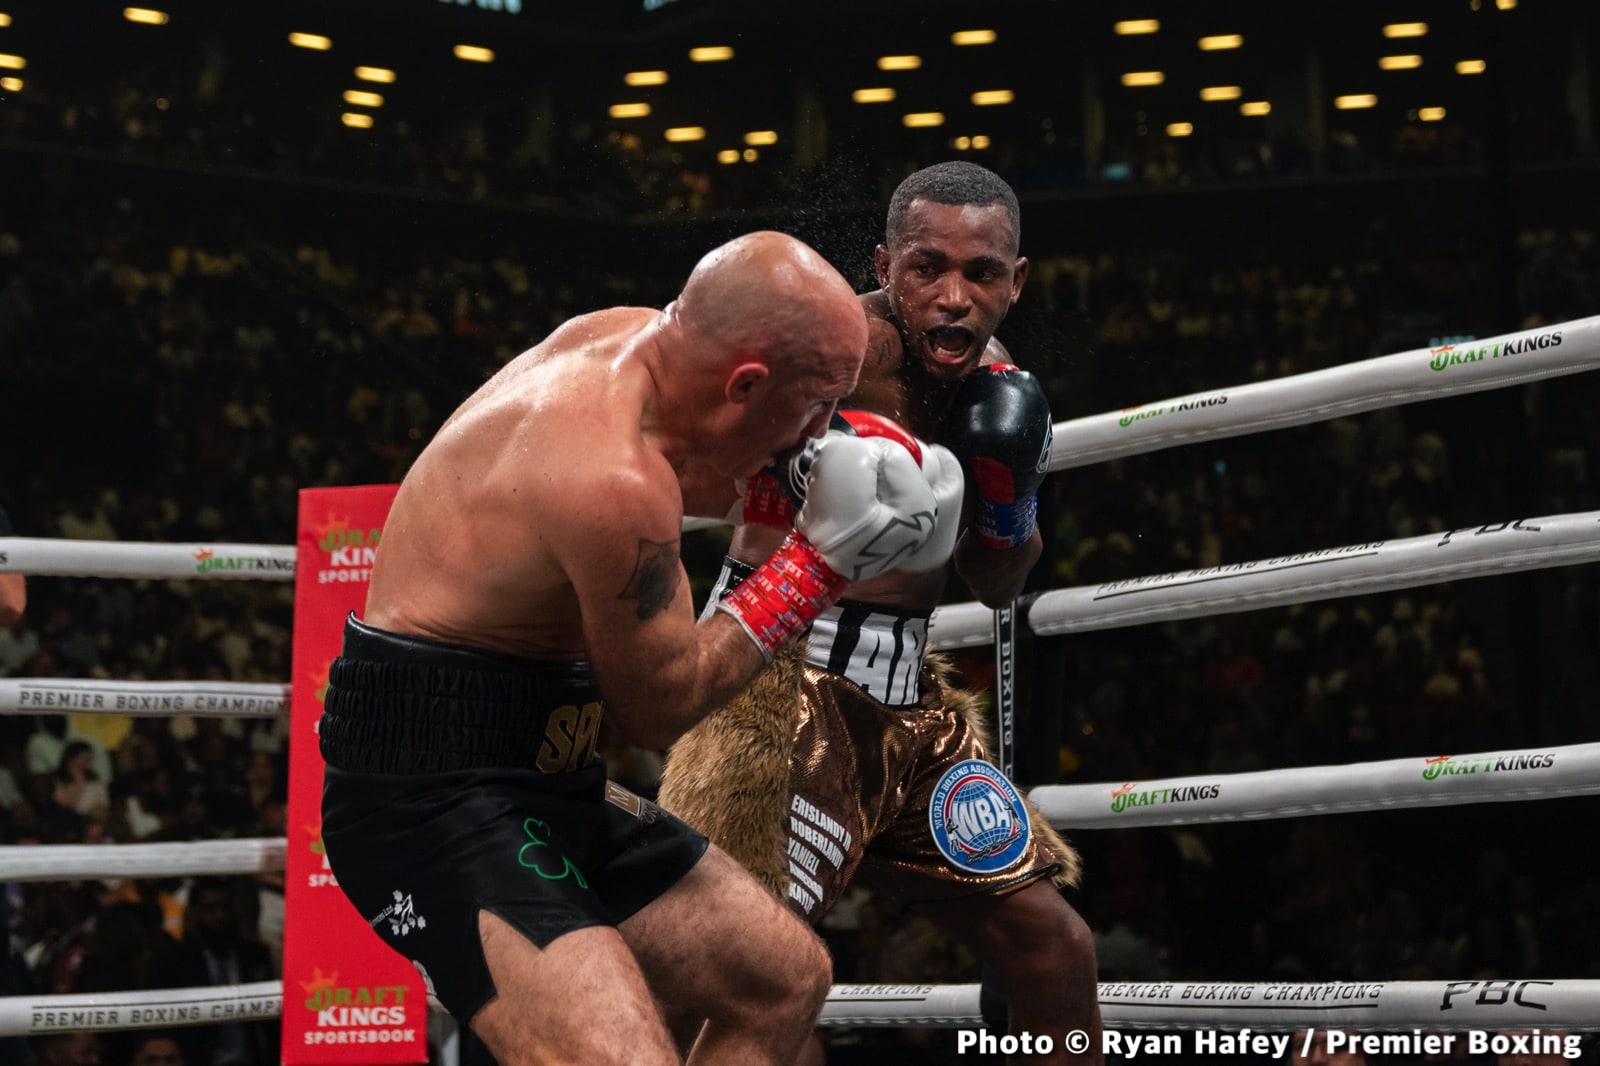 Gervonta Davis vs. Rolando Romero - LIVE results from Brooklyn, NY